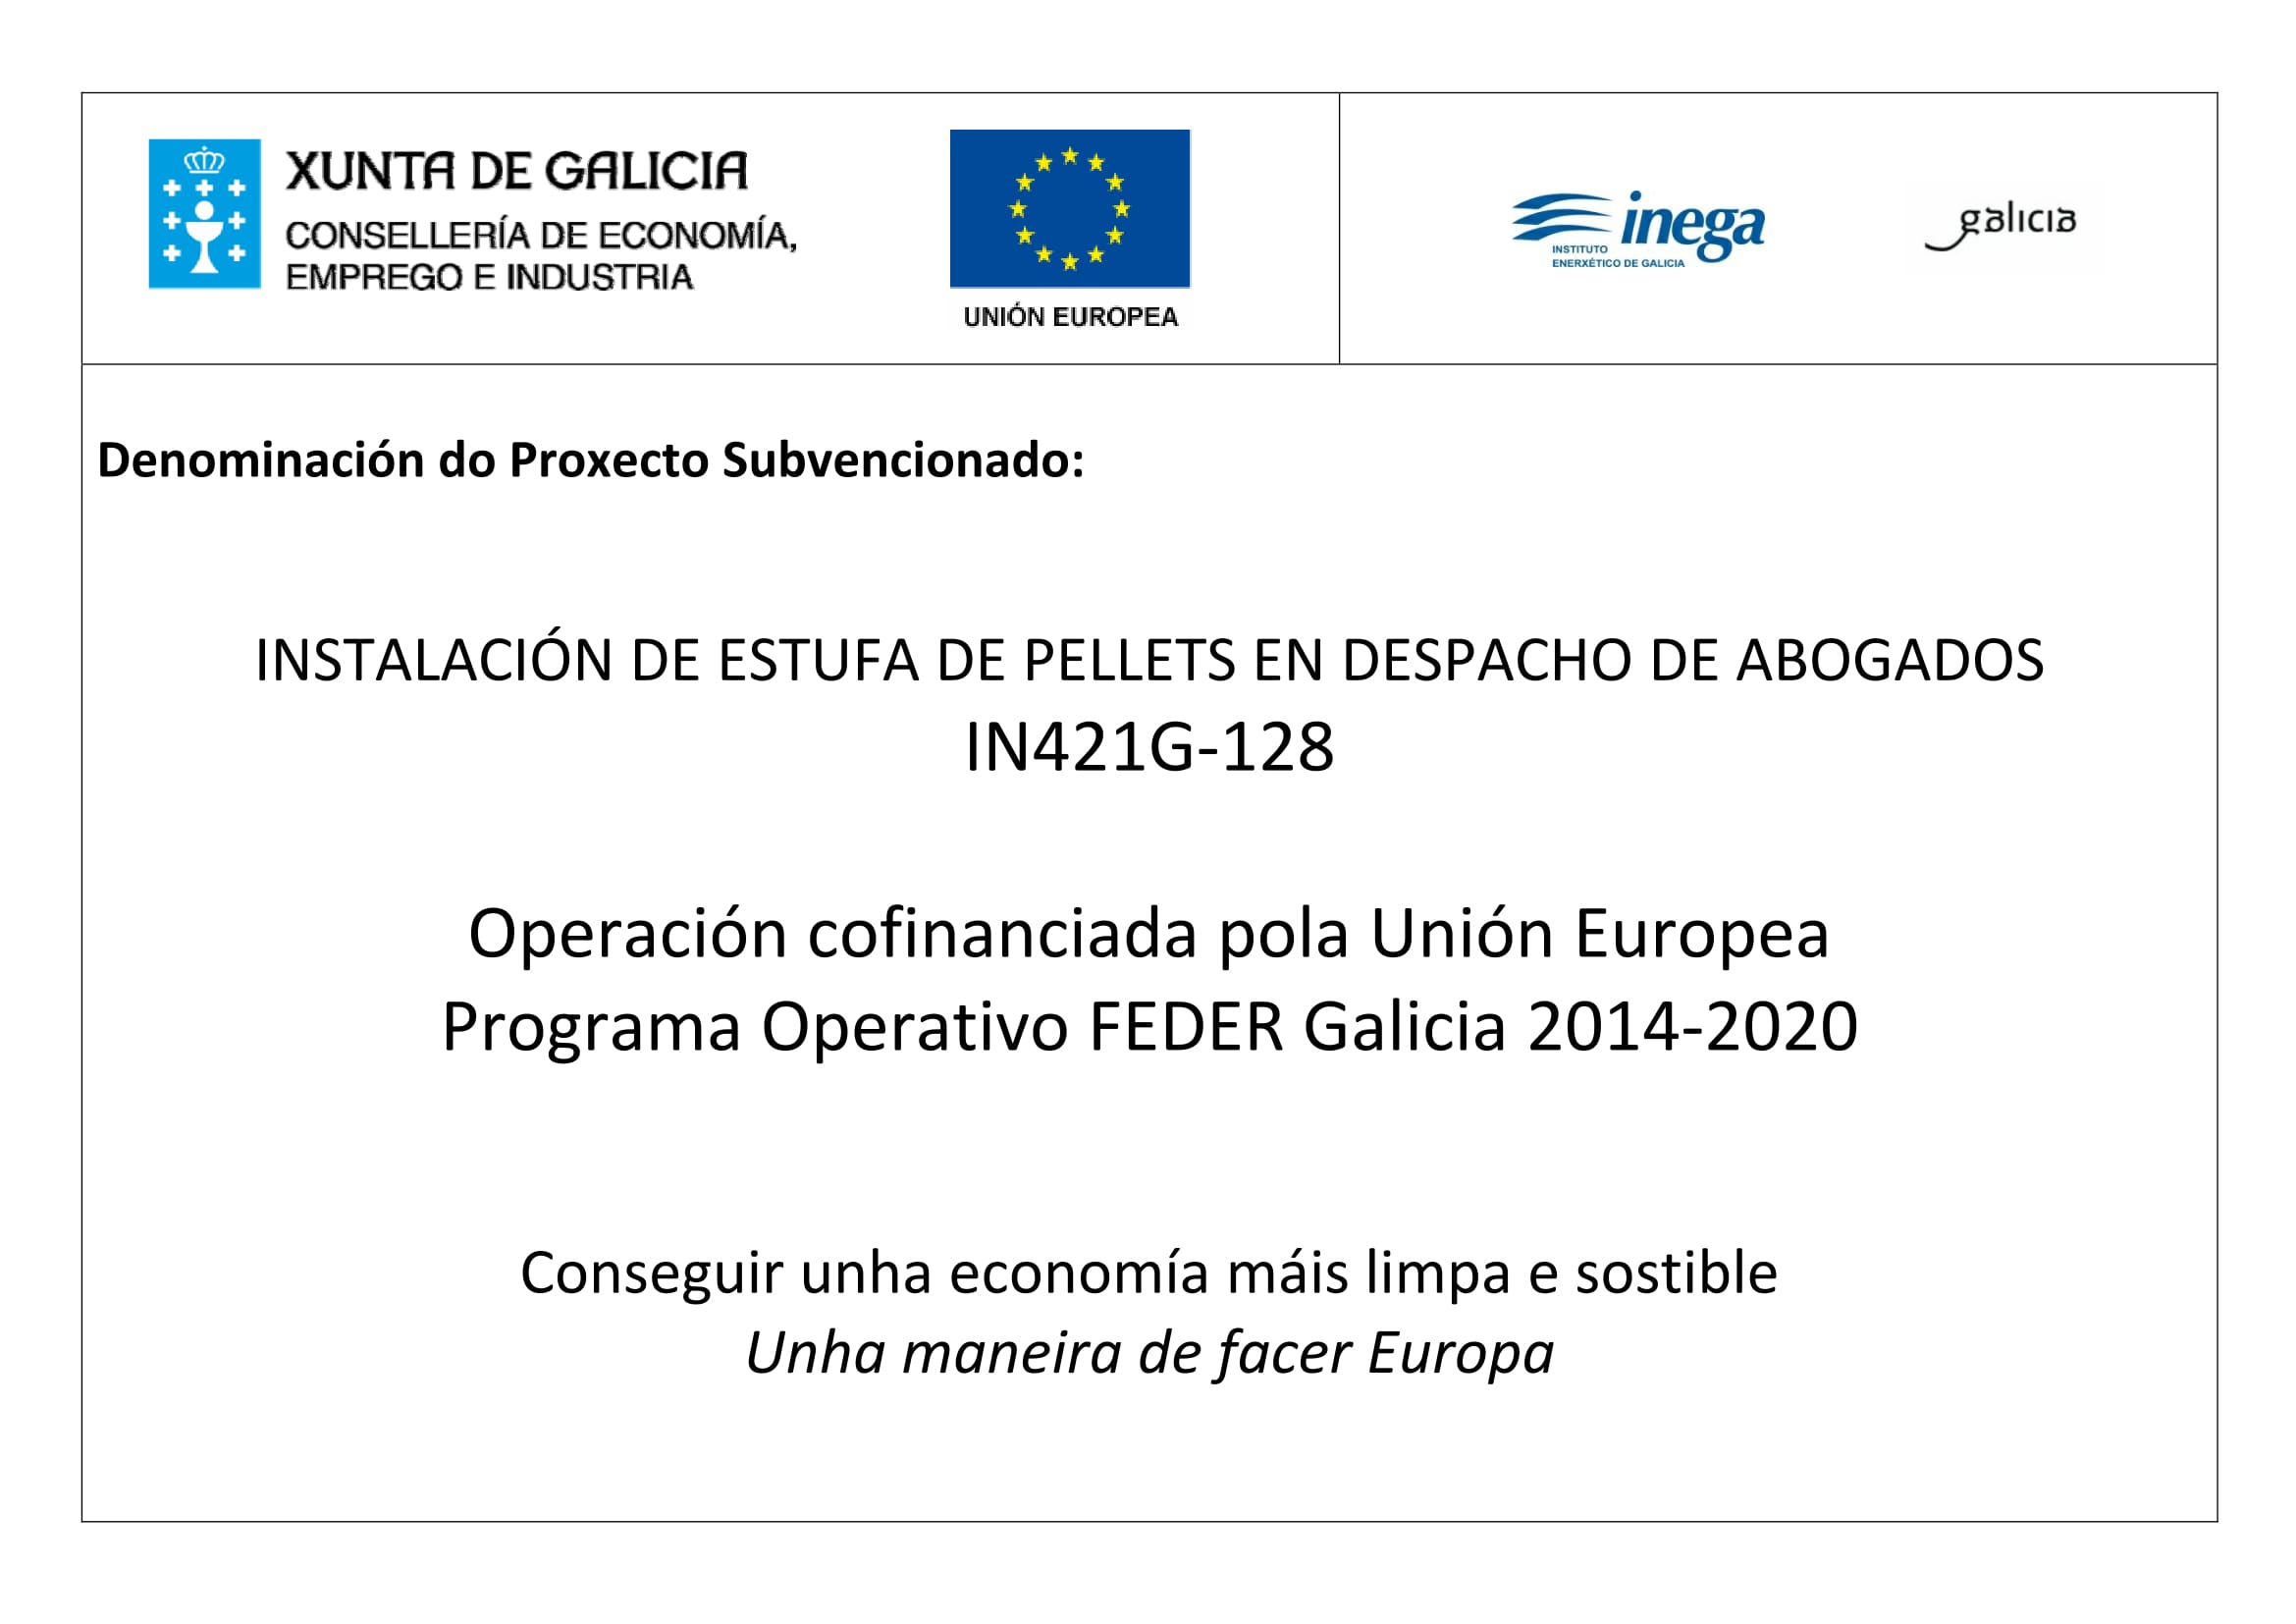 imagen del cartel promocional de Programa Operativo FEDER Galicia